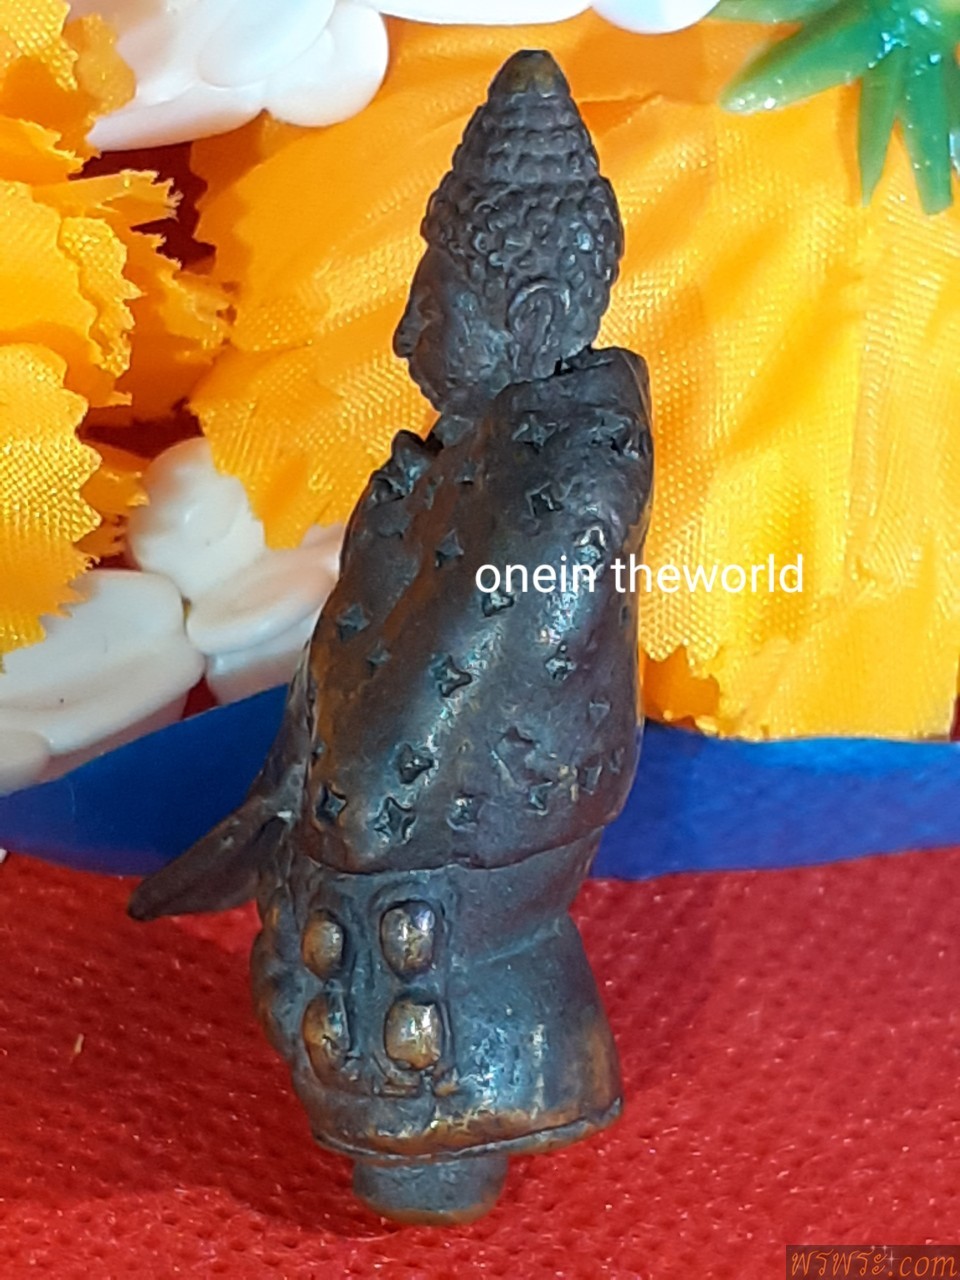 โชว์//พระกริ่ง ปวเรศ เครื่องทรงจีน ตอกลาย ปางประธานพร หล่อเต็มองค์ มีแกนช่อ พบเห็นน้อยองค์ เนื้อสัมฤทธิ์ พบ1องค์ ณ.18/06/2560Phra Kring Pawaret amulet, Chinese style, stamped pattern, posture of the blessing, full casting, with a bouquet of cores, rarely seen bronze